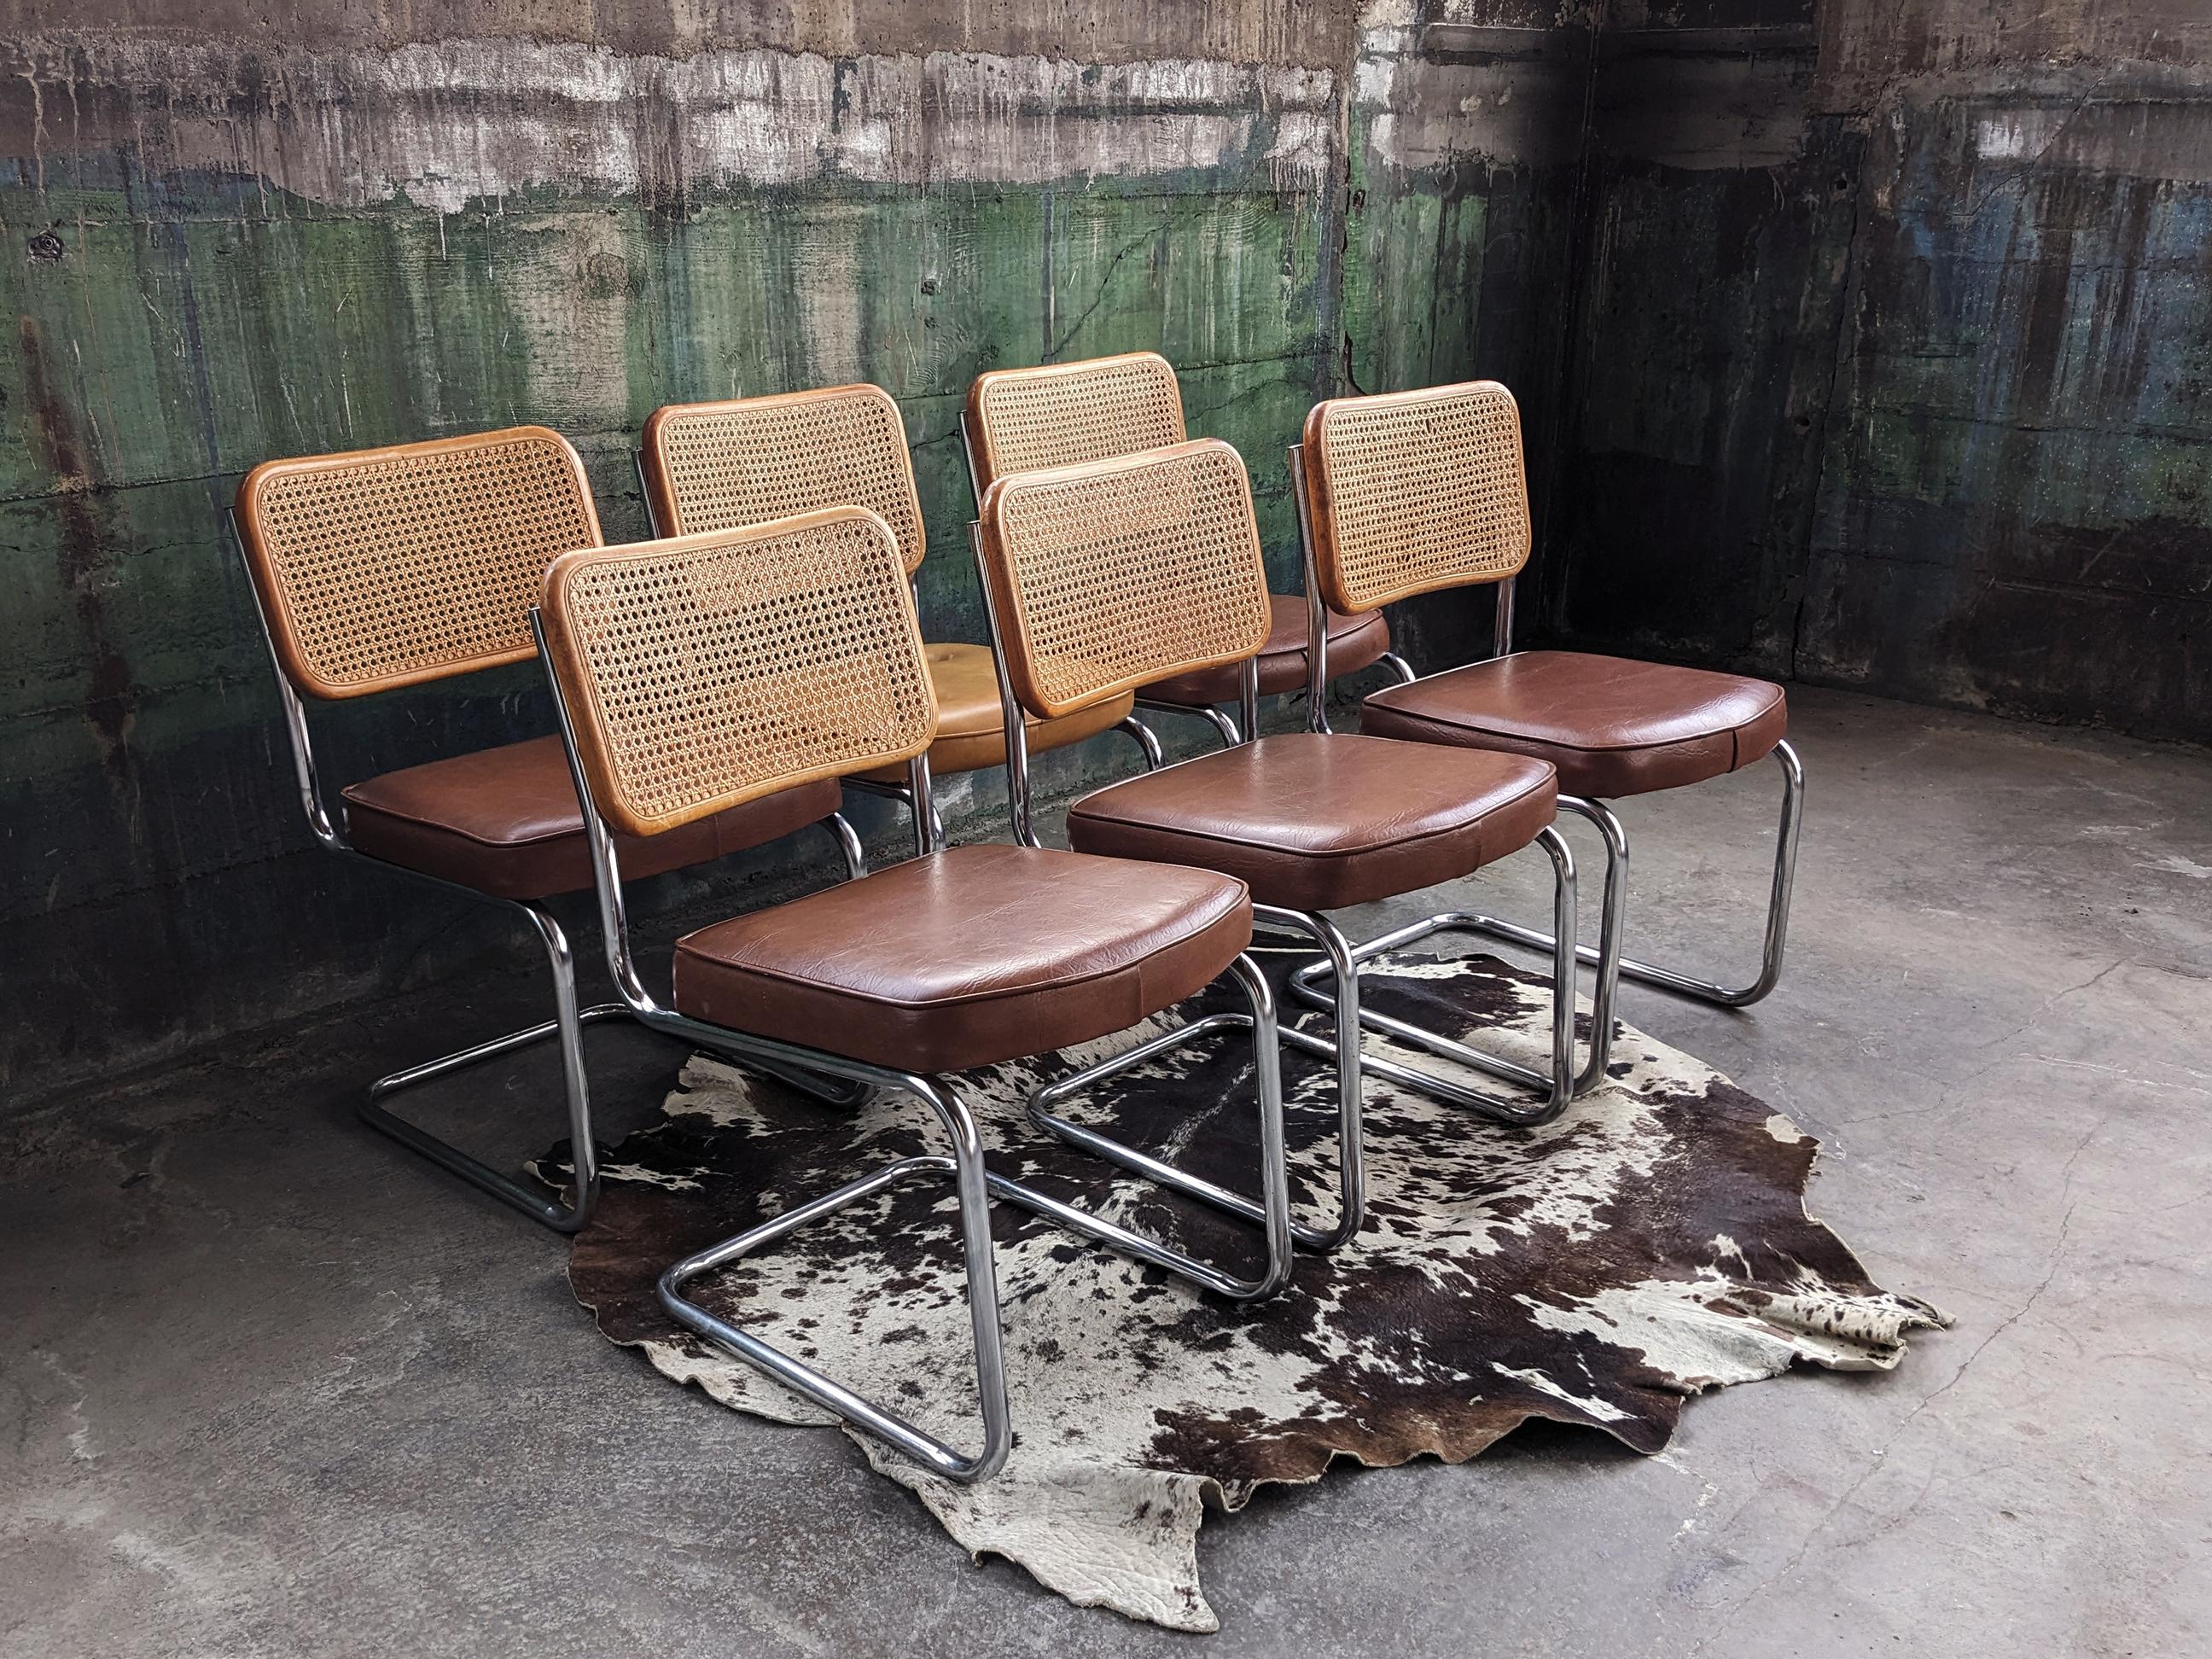 Magnifique ensemble de 6 chaises Cesca originales de Breuer, avec assise et dossier en bois, dossier en cannage en œil d'oiseau, assise coussinée et structure en métal chromé. Cet ensemble est en très bon état vintage. Ensemble solide et